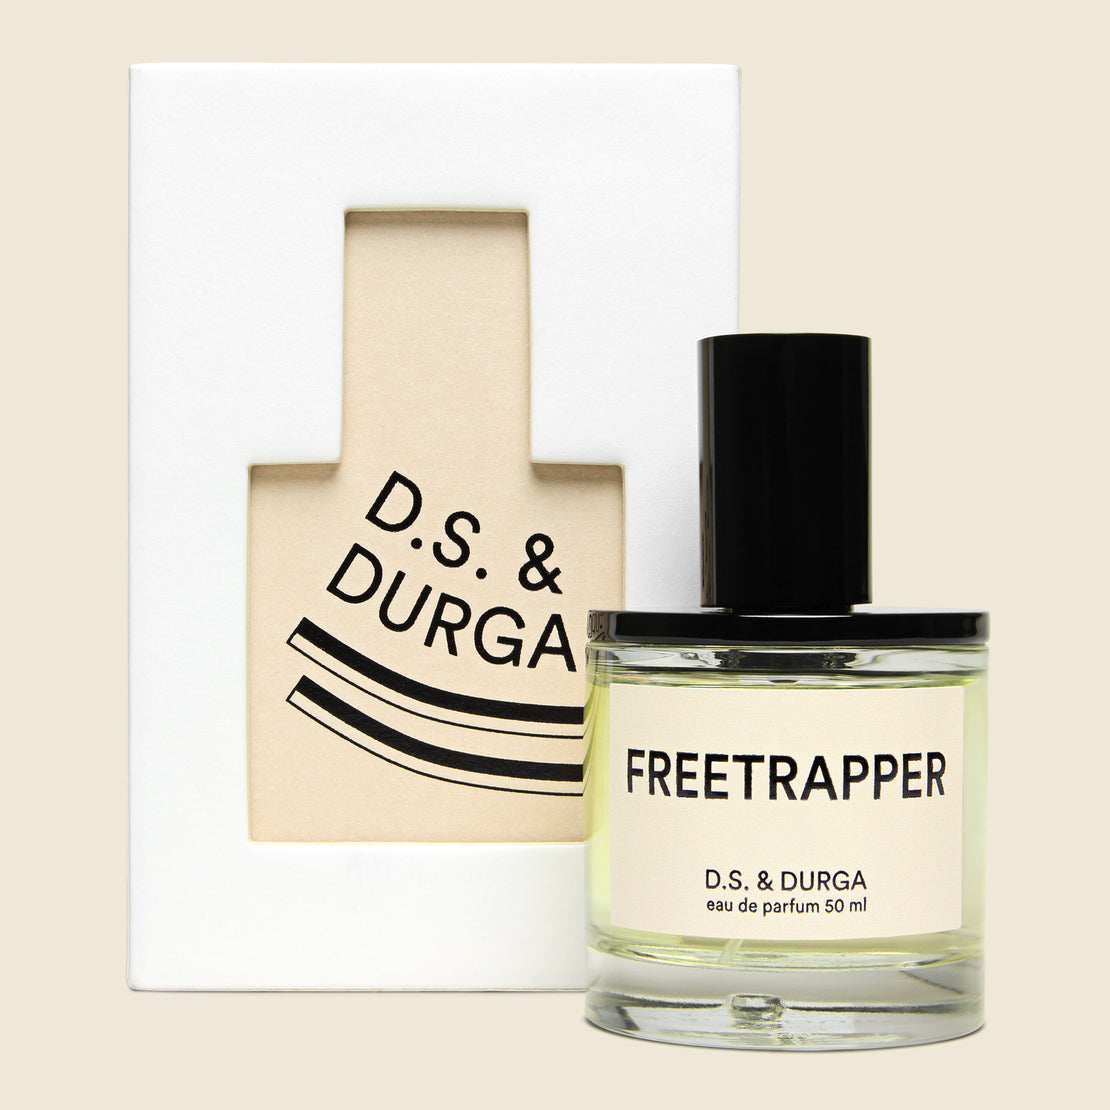 D.S. & Durga Cologne - Freetrapper